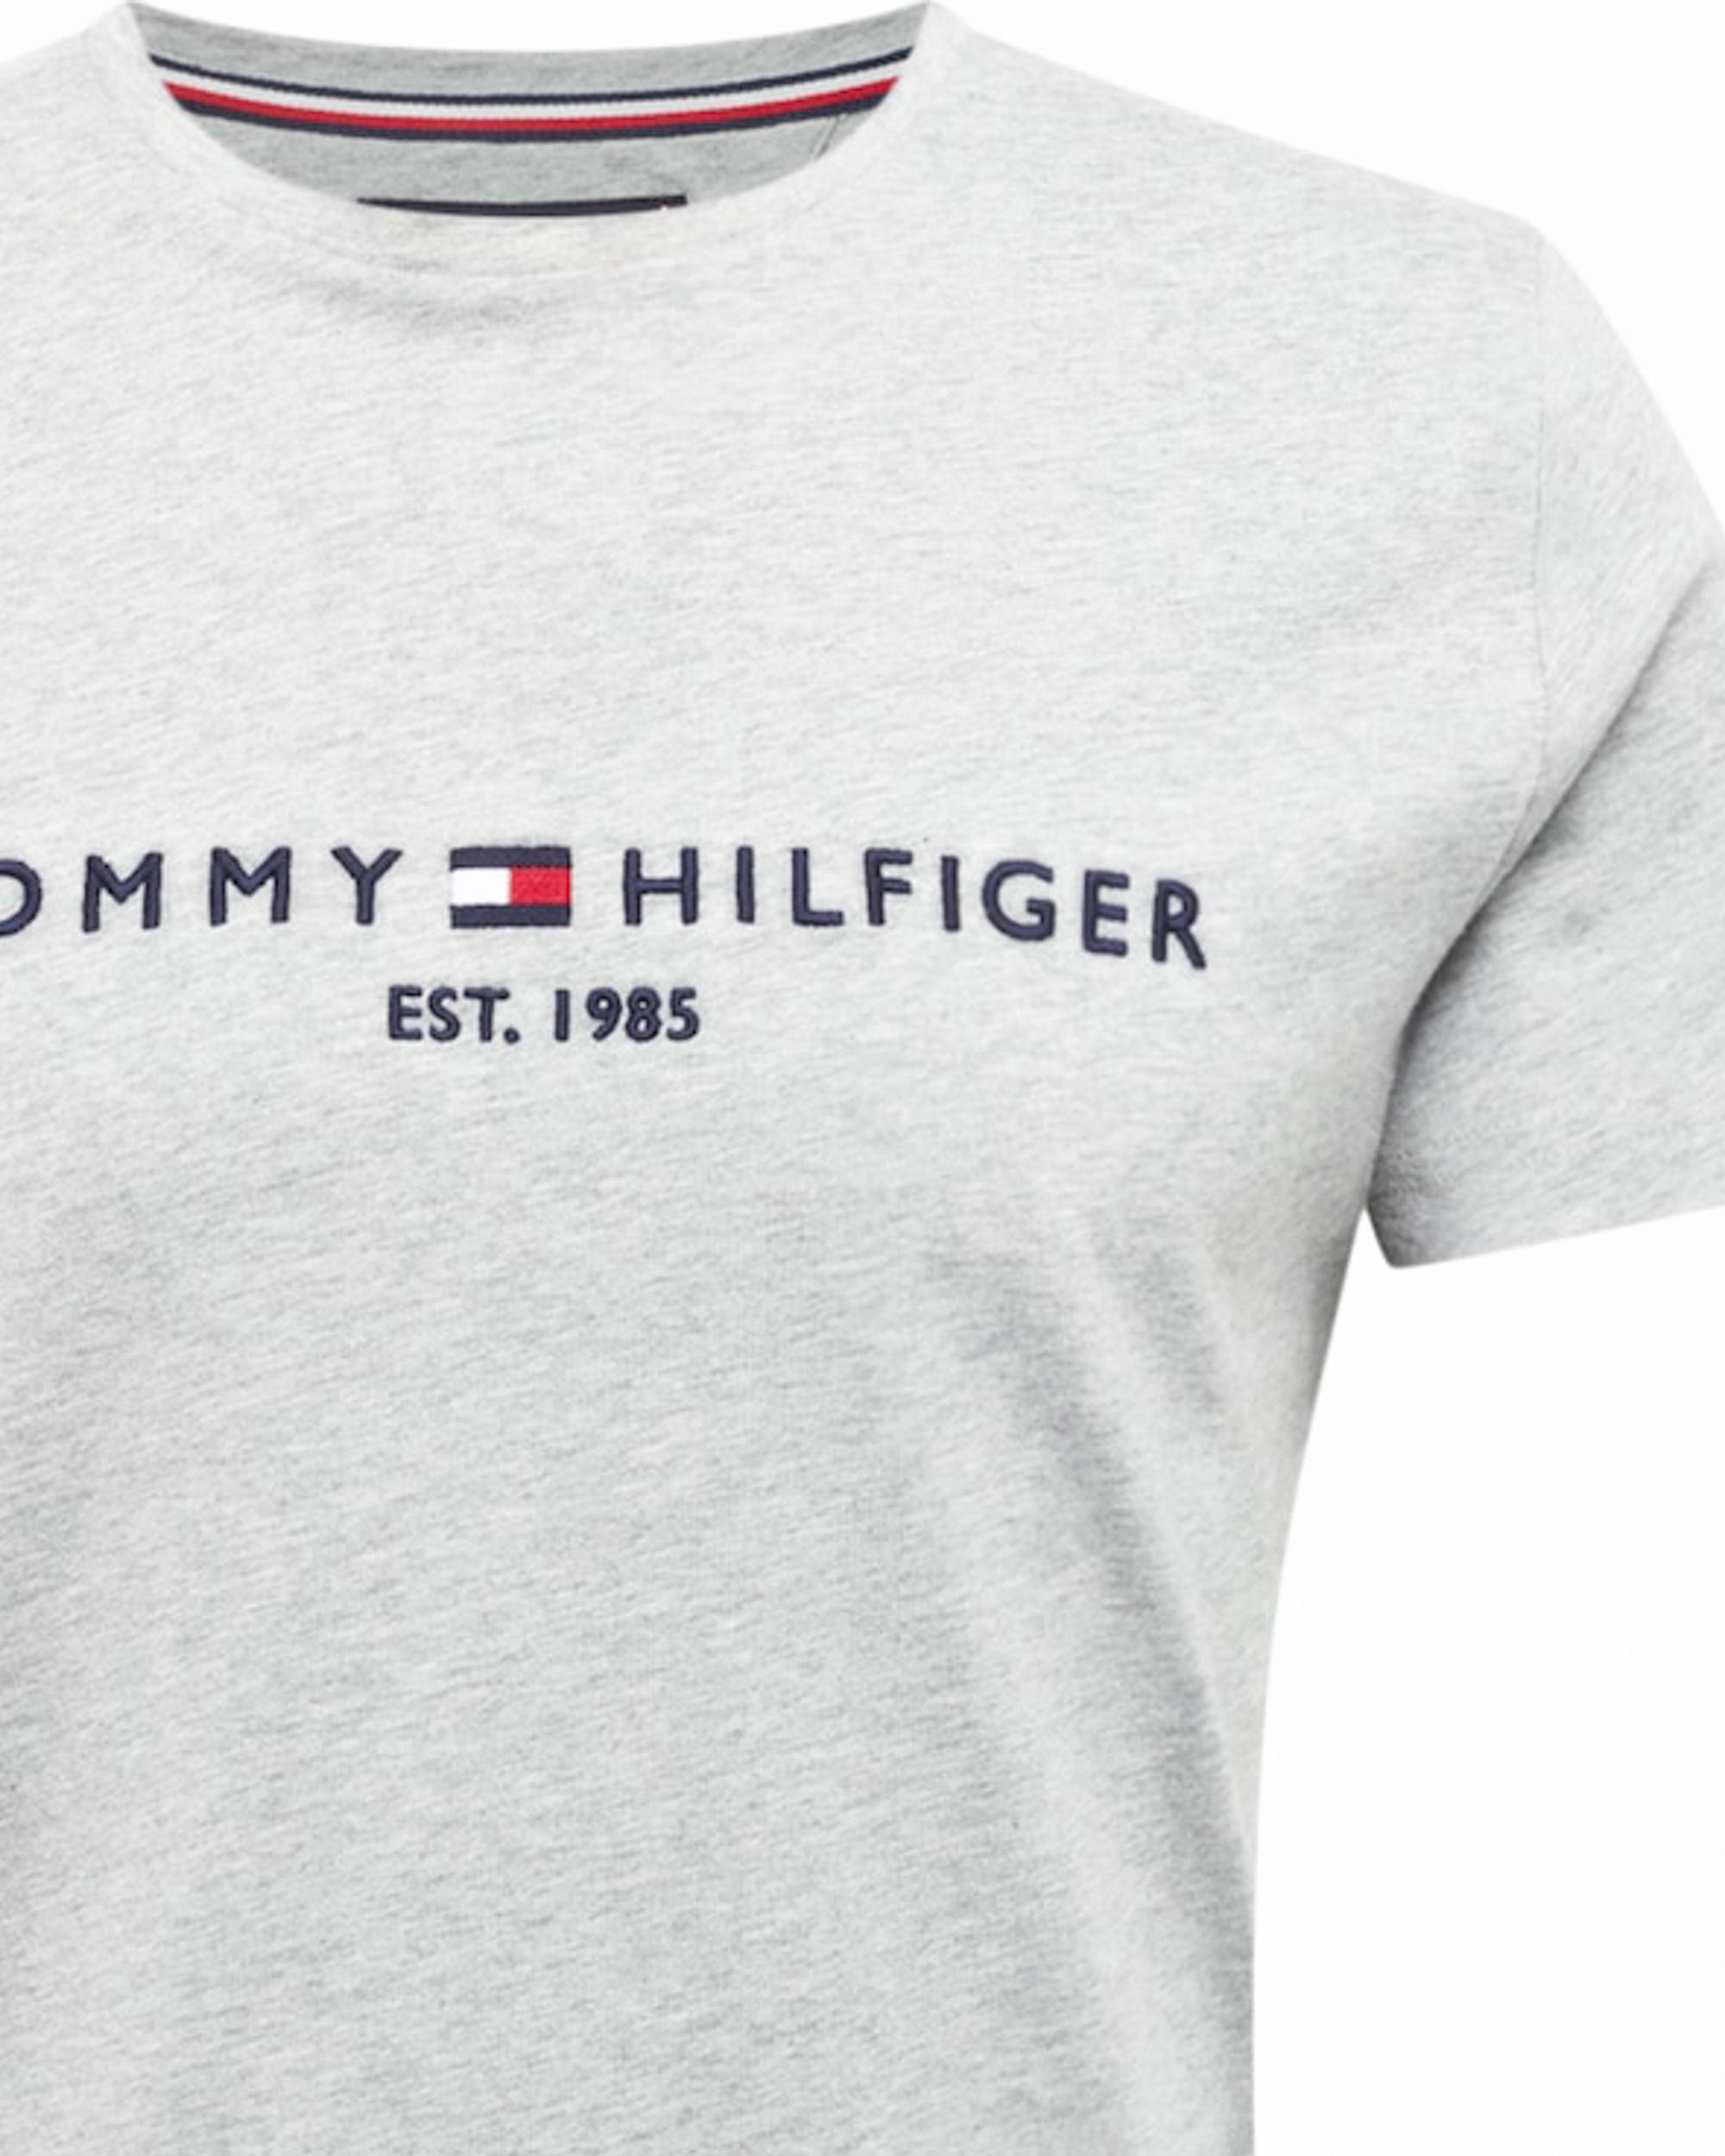 Tommy Hilfiger Menswear T-shirt KM Licht grijs 086991-001-L